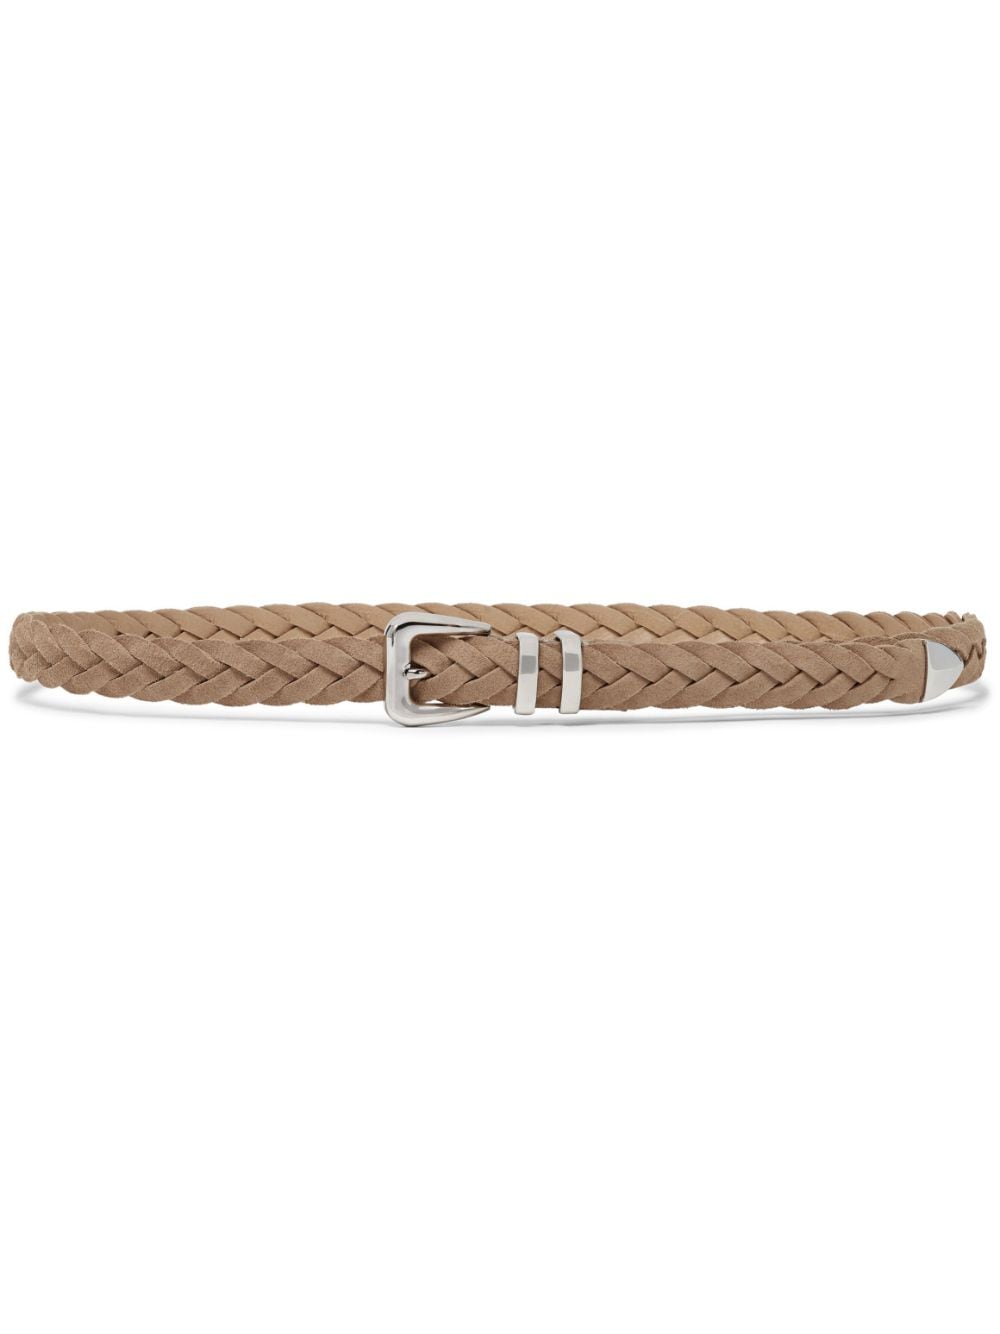 Brunello Cucinelli Braided Leather Belt In Brown